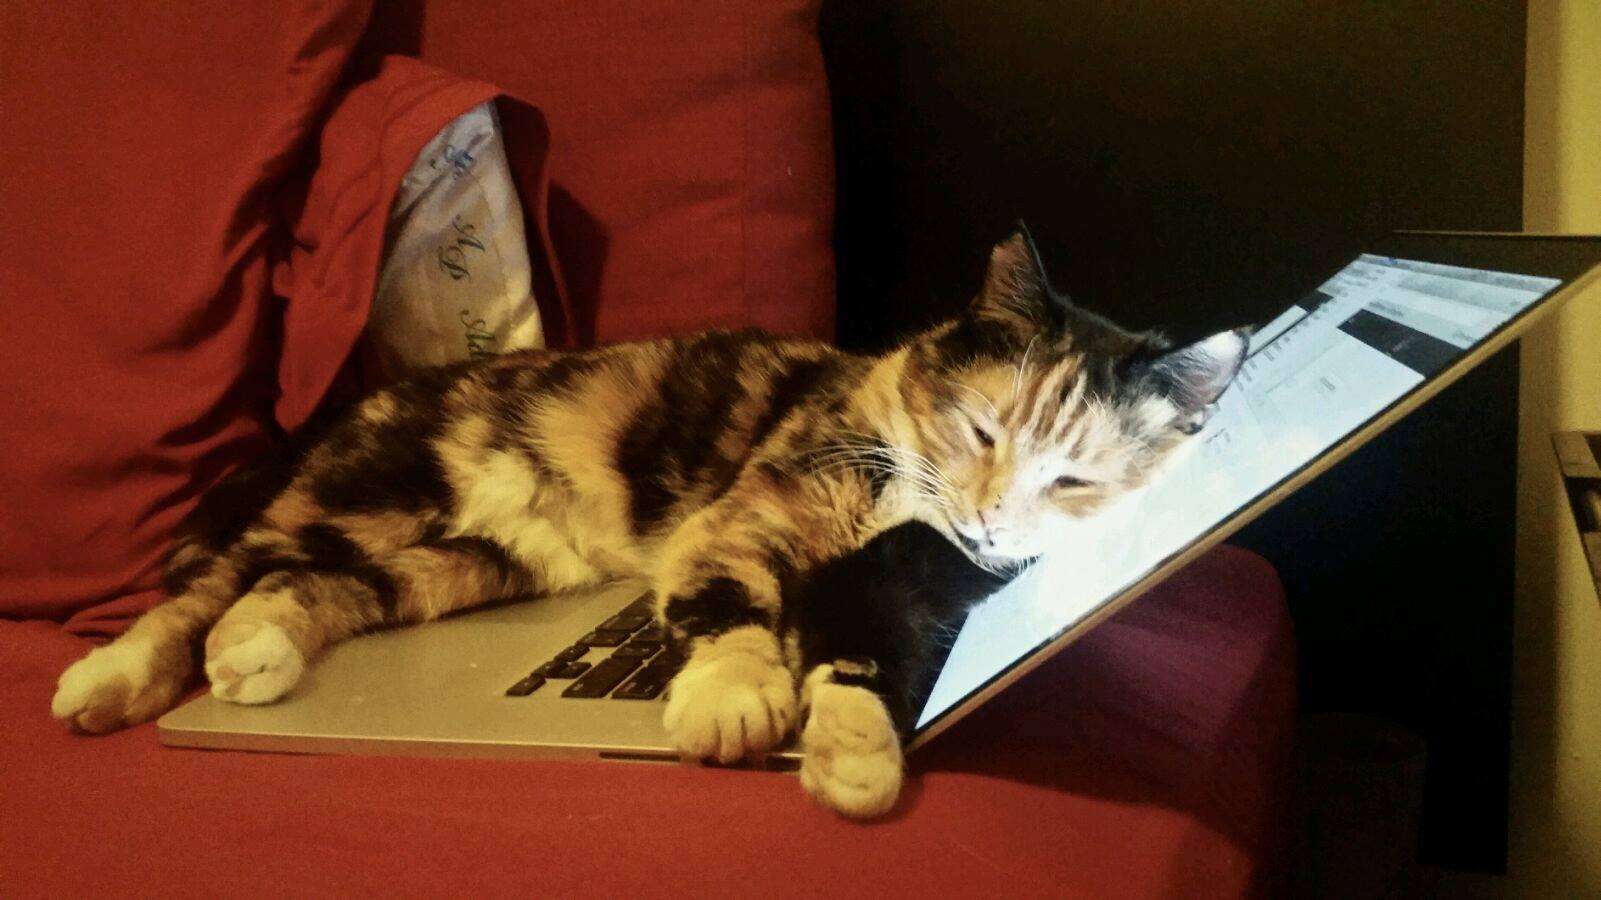 Rescue cat Mochi sleeping on open laptop